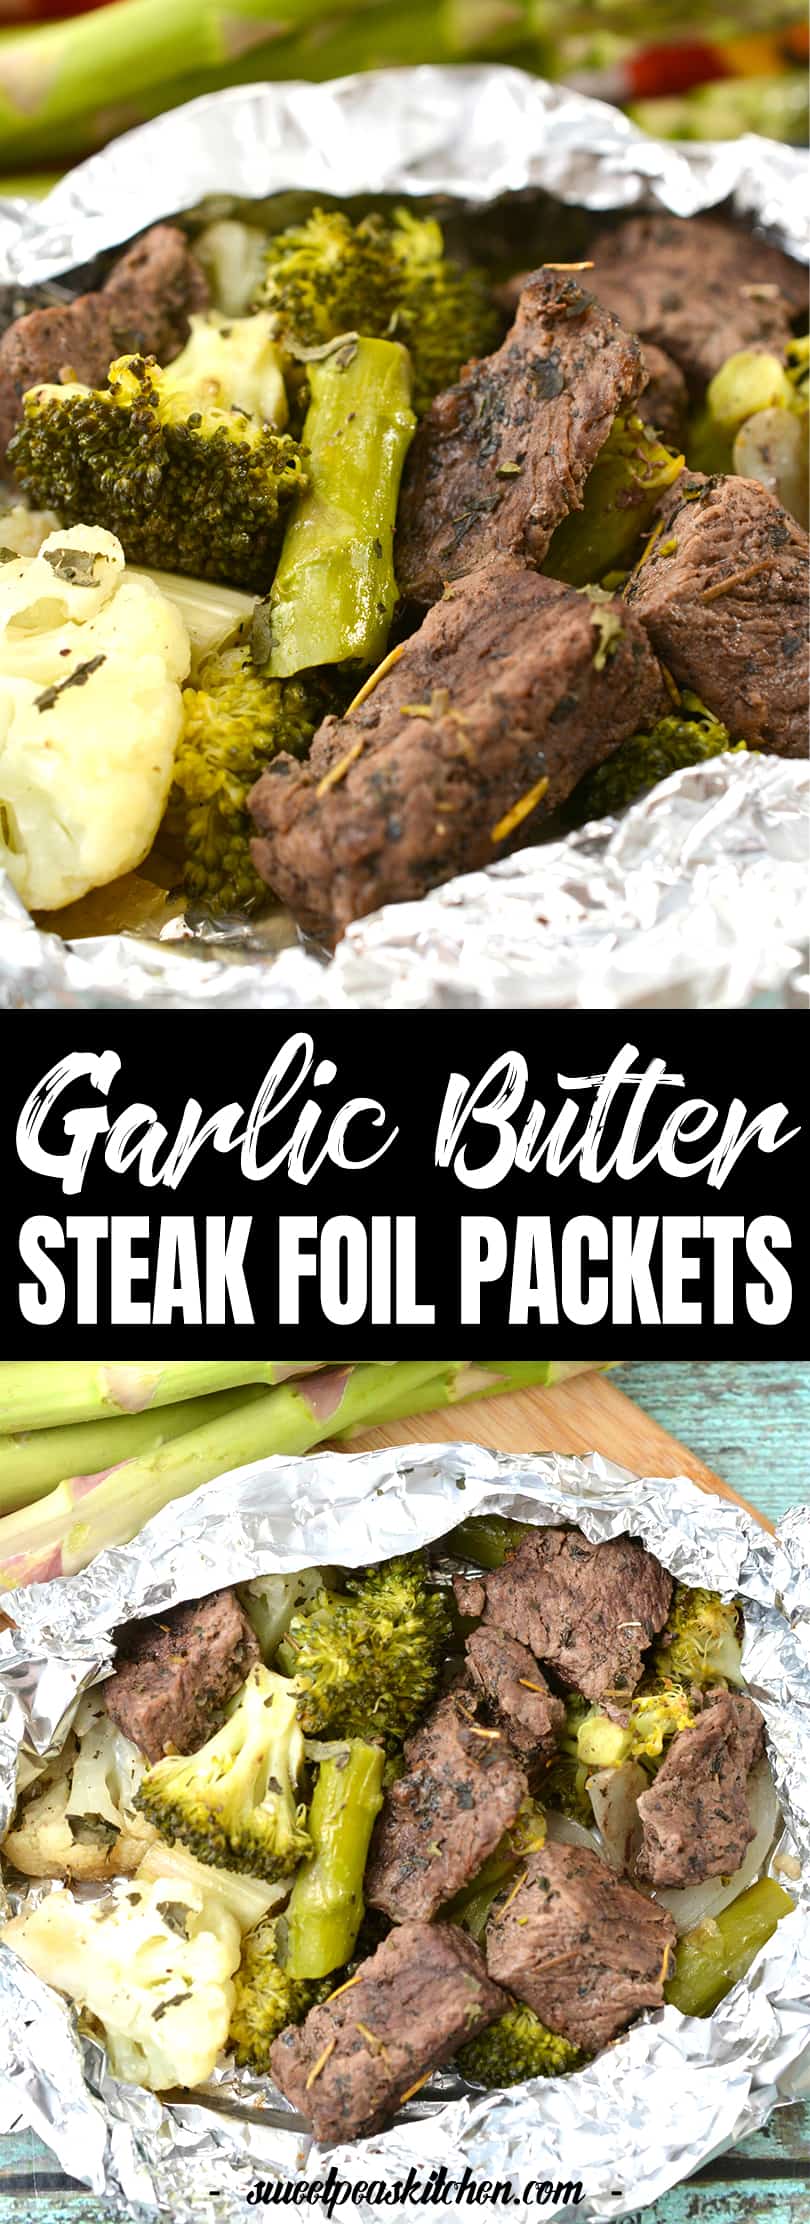 Garlic Butter Steak Foil Packets Recipe